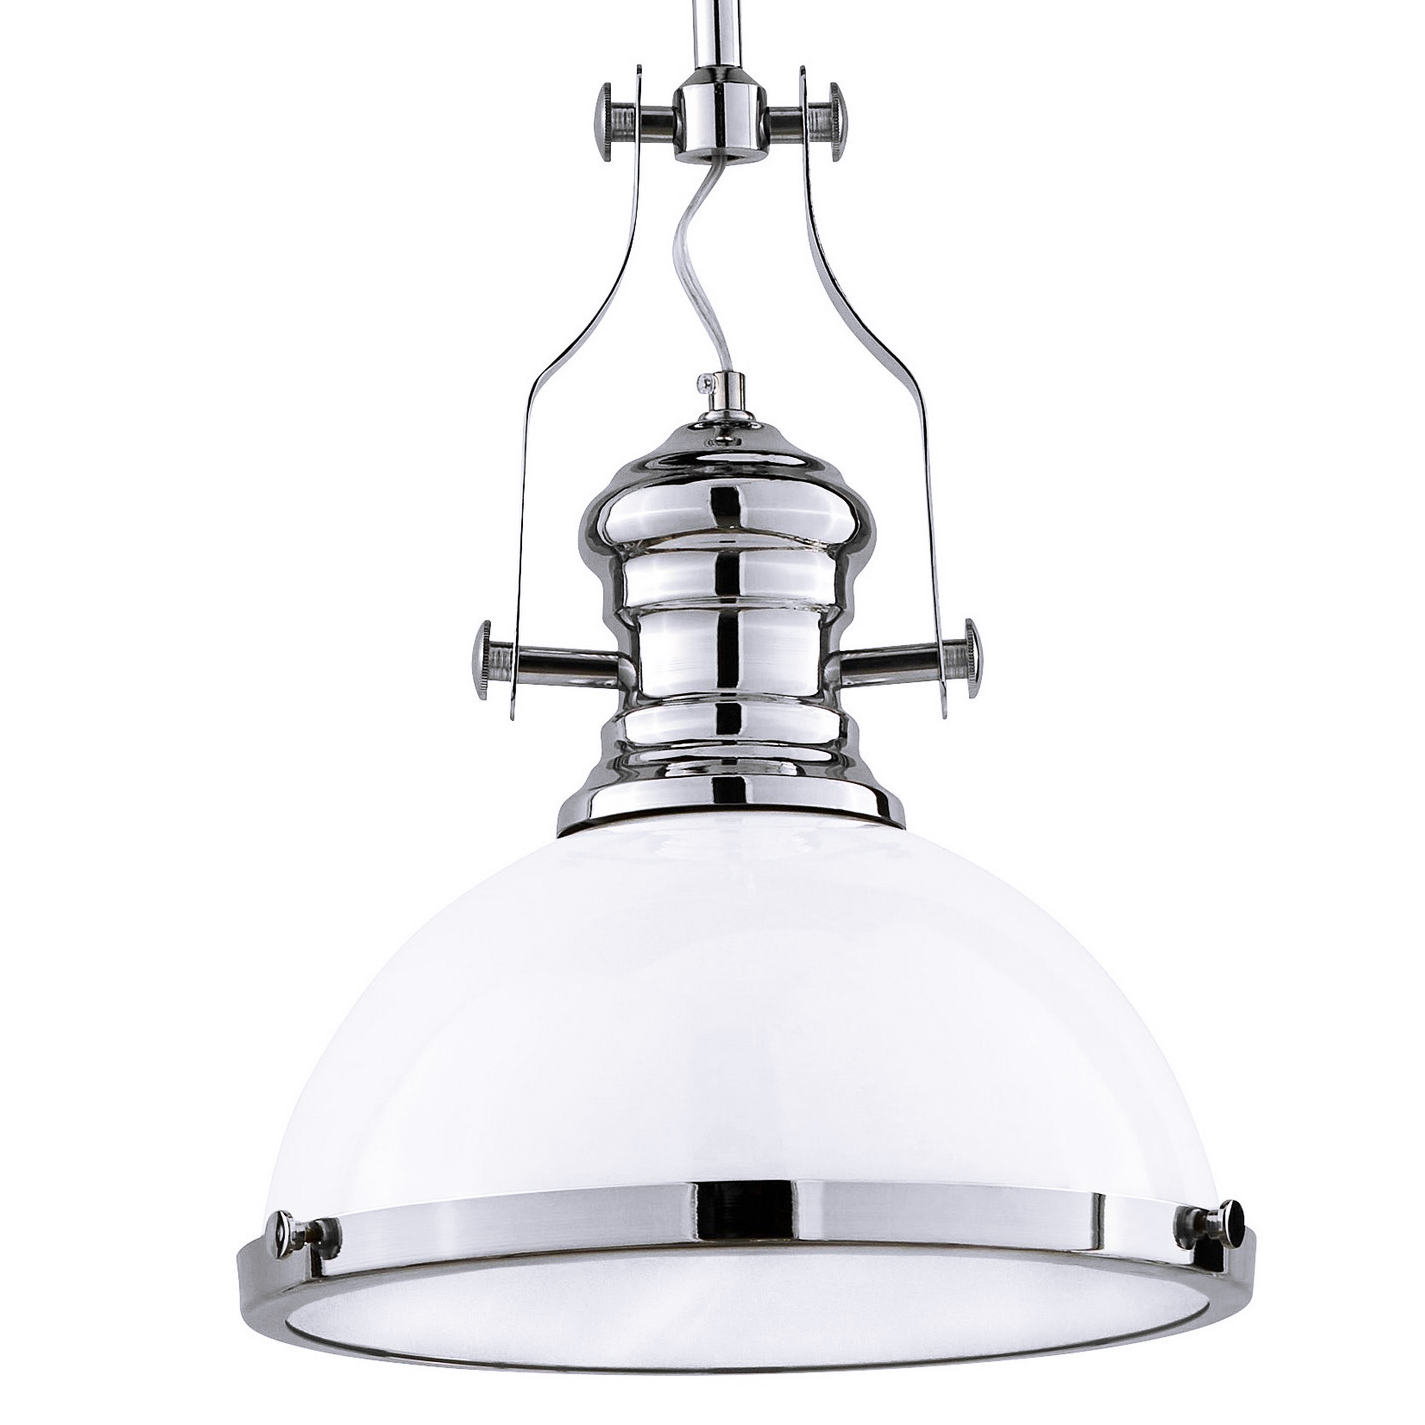 Industriálna loftová závesná lampa ETTORE, priemyselná kovová biela kupola na rúrke, chrómované časti - Lumina Deco obrázok 1